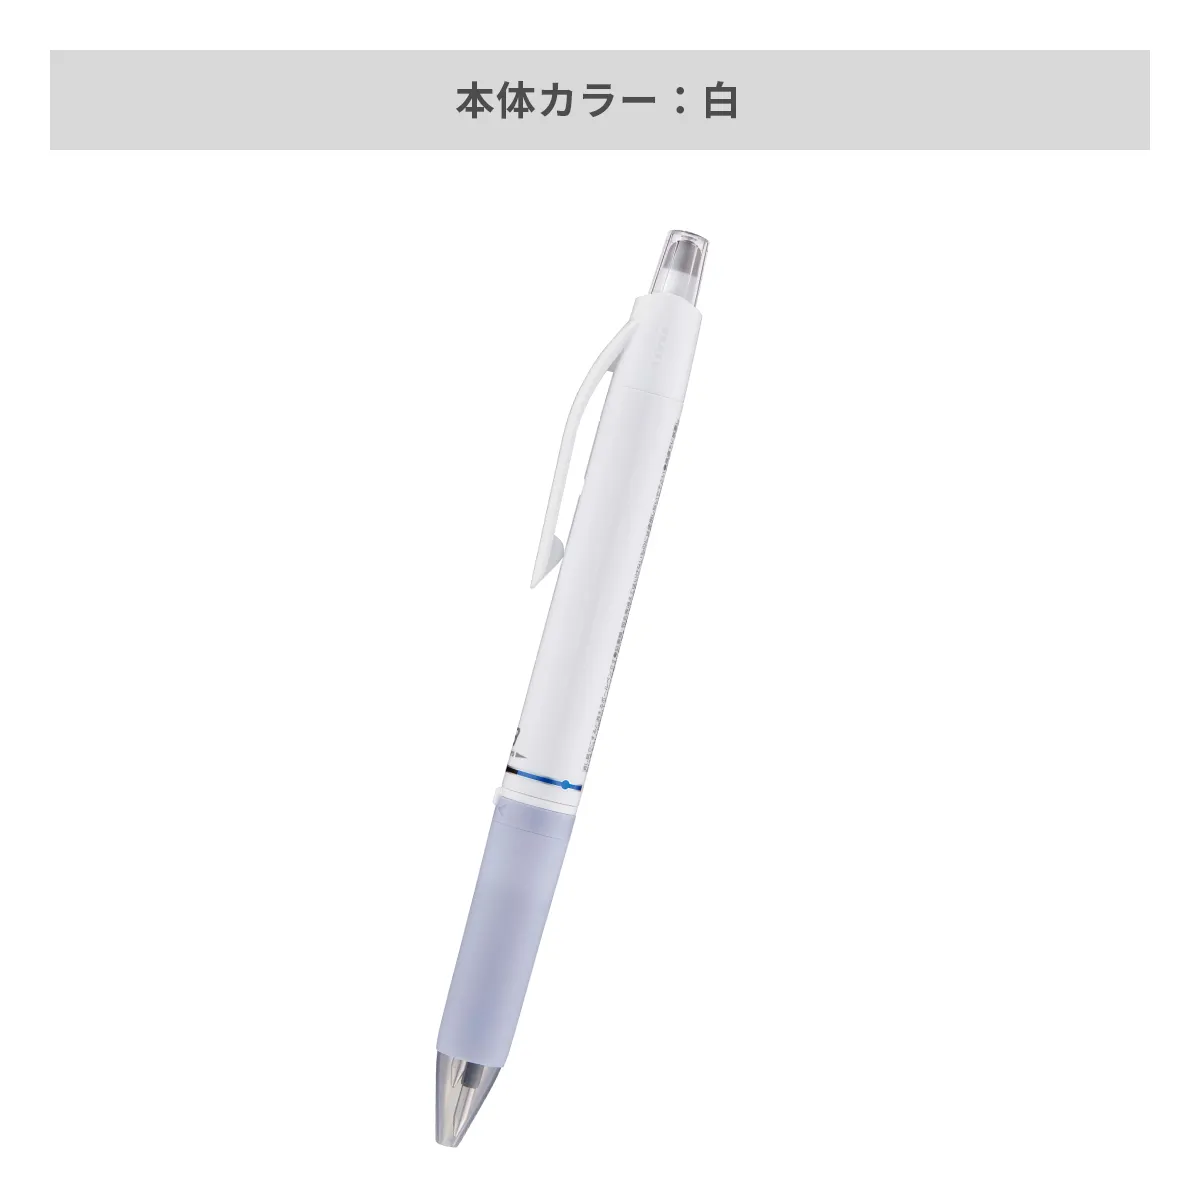 三菱鉛筆 ユニボール アールイー3 白軸 0.5mm【名入れボールペン / パッド印刷】 画像4